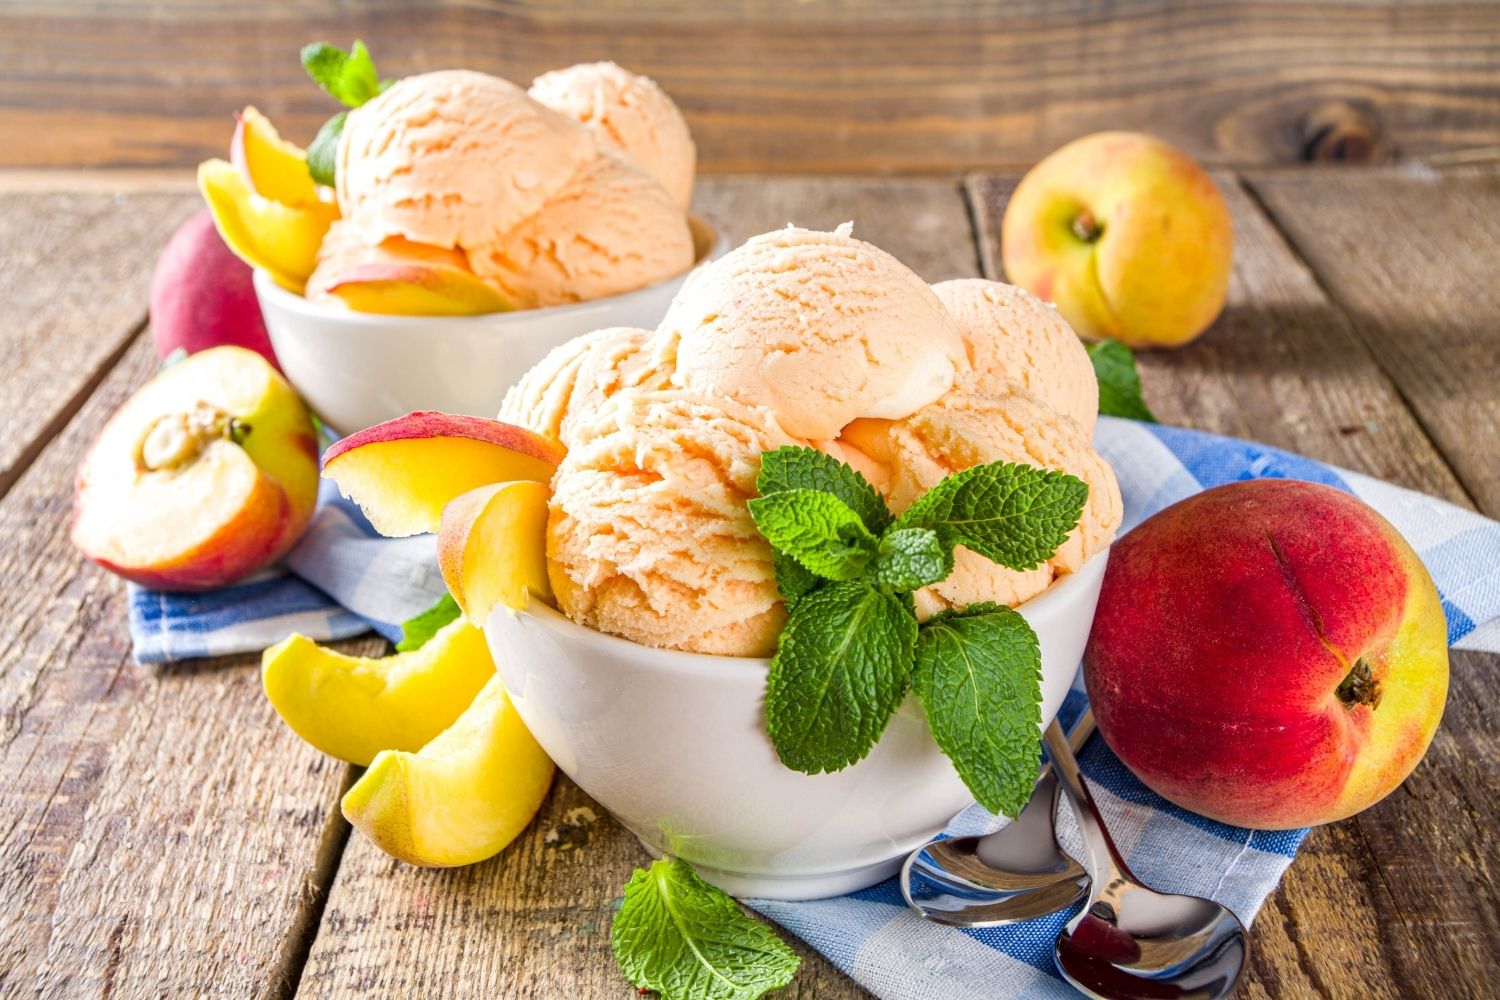 Мороженое с персиком